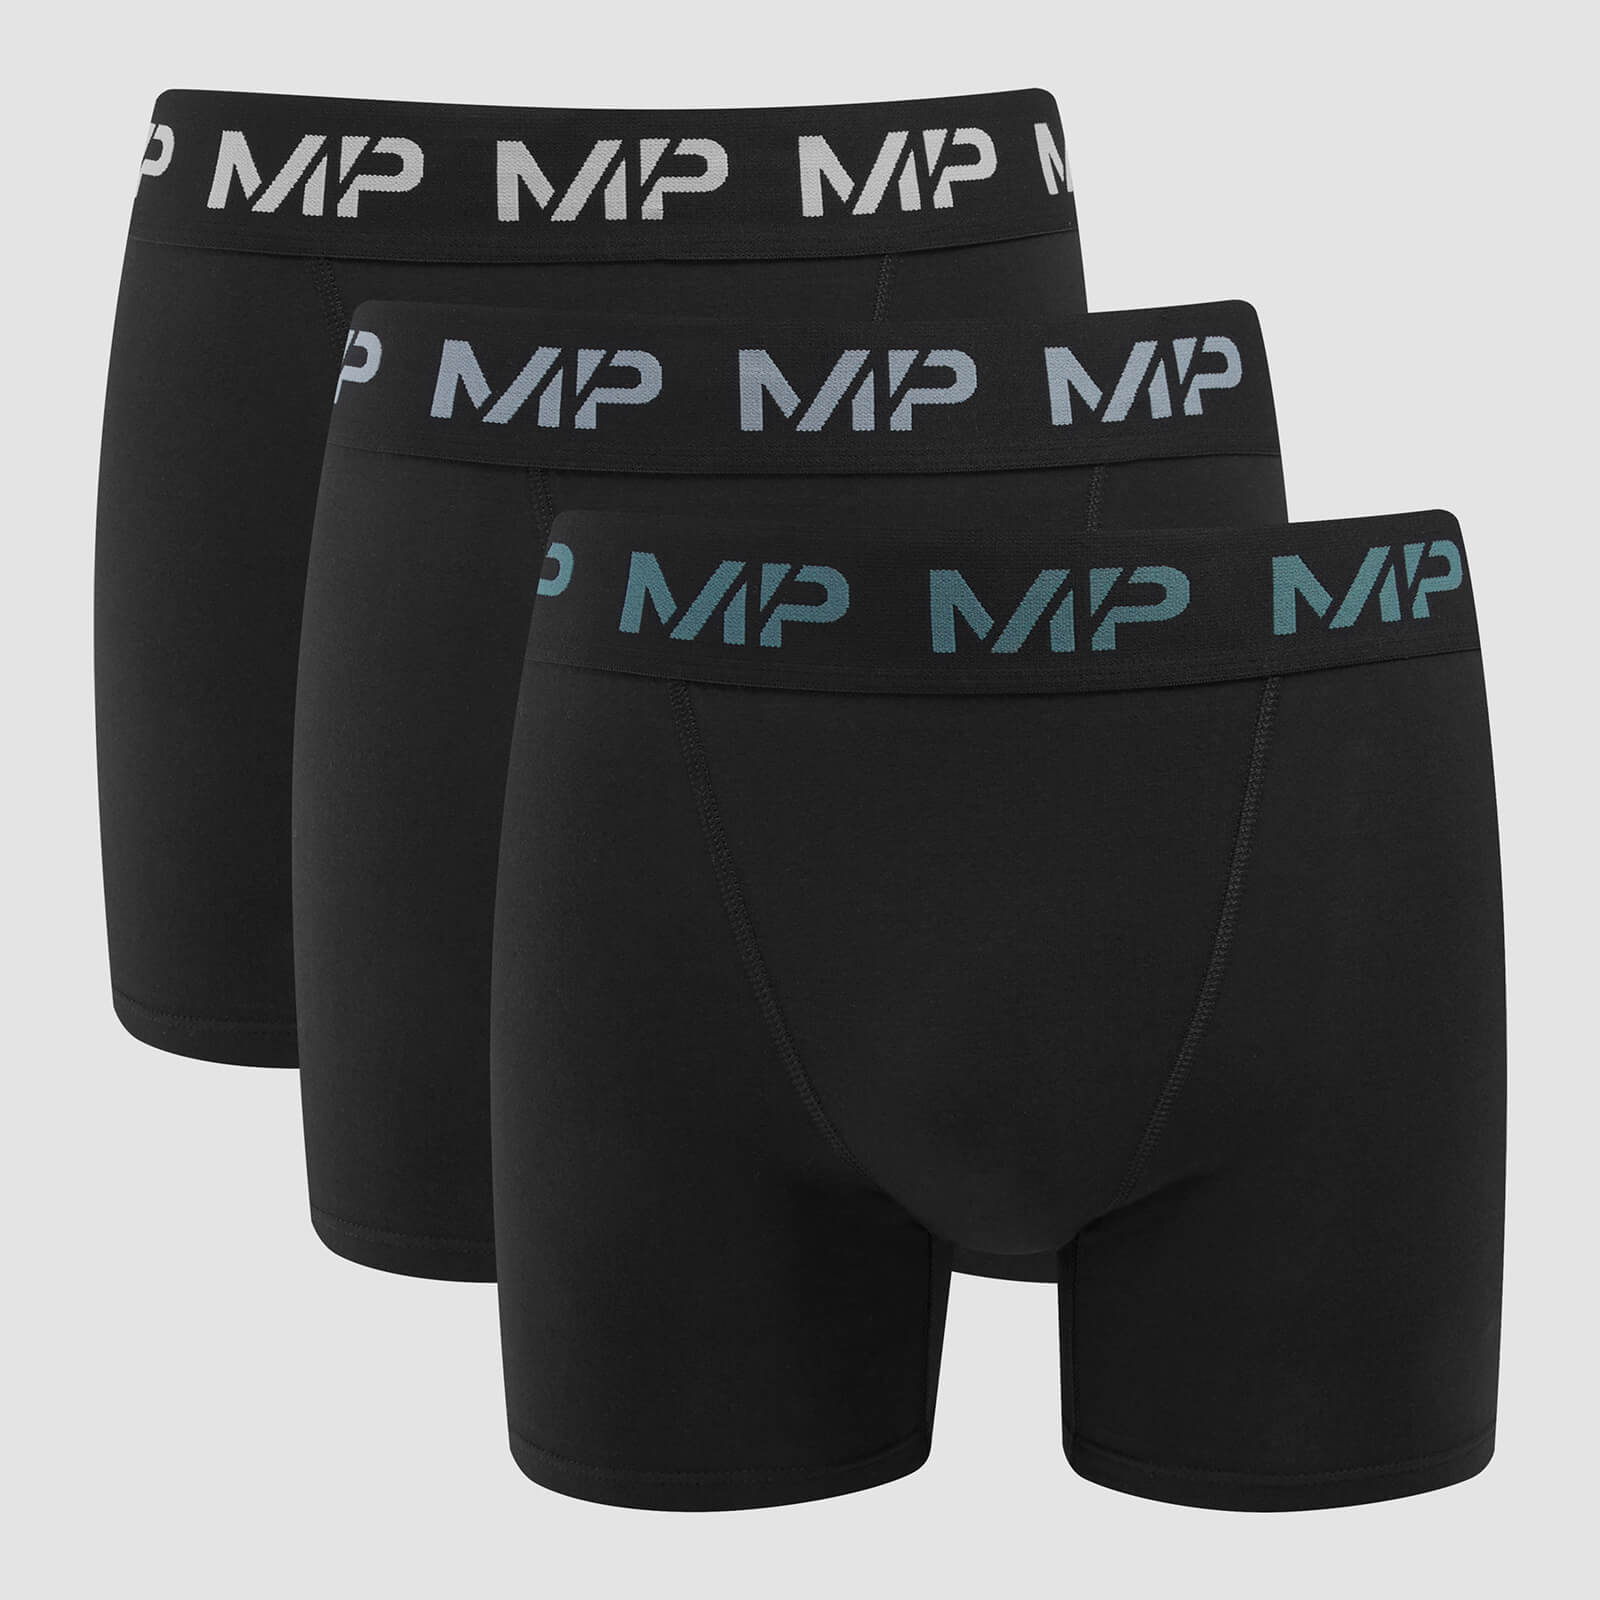 Boxers à logo coloré MP pour hommes (lot de 3) – Noir/Bleu fumé/Bleu galet/Gris foncé - S